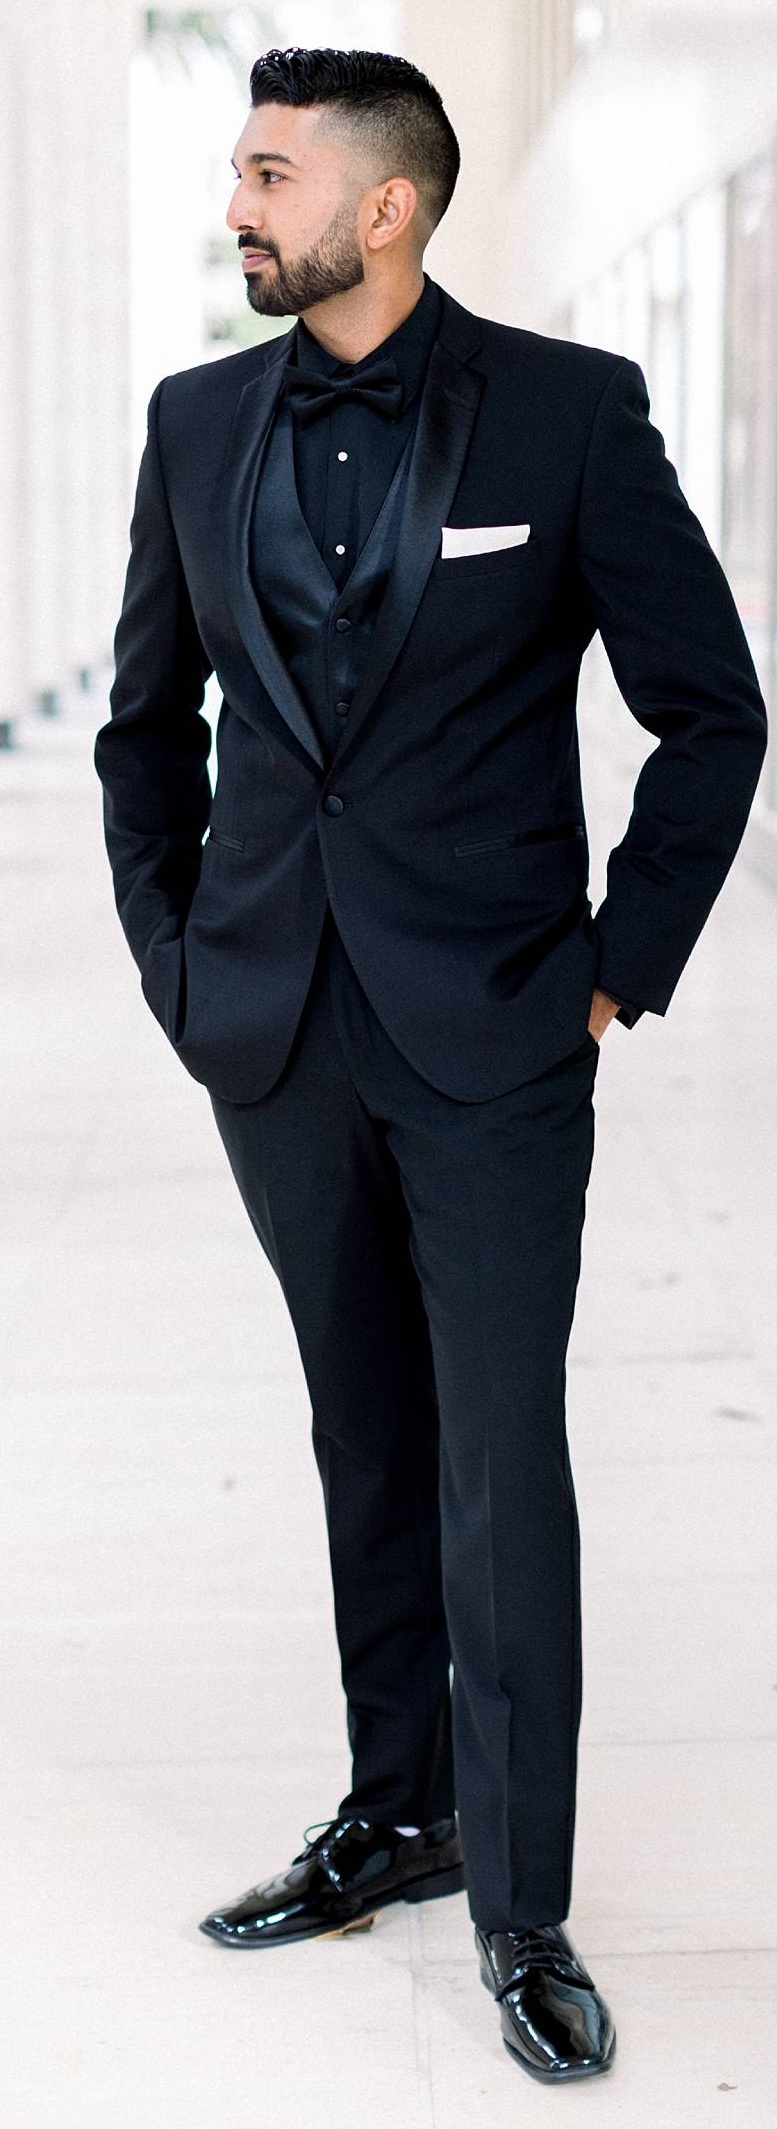 Tuxedo Suit Ideas for Men